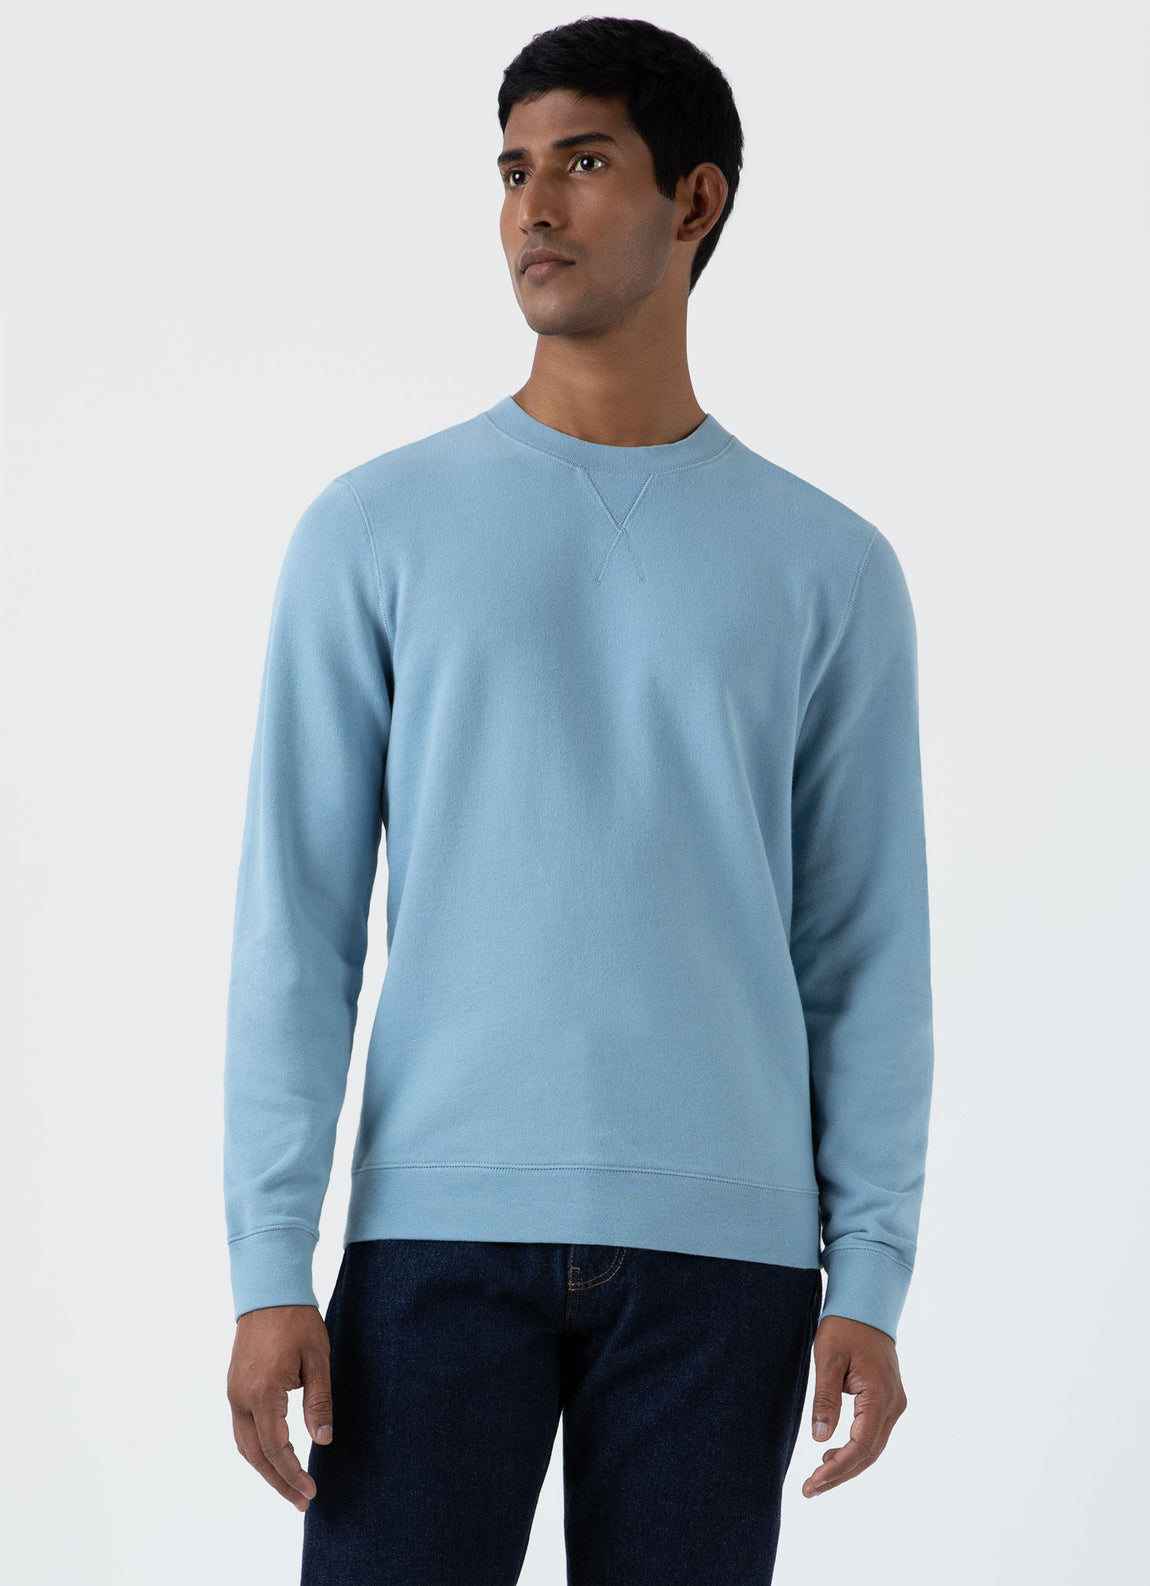 Men's Loopback Sweatshirt in Sky Blue | Sunspel